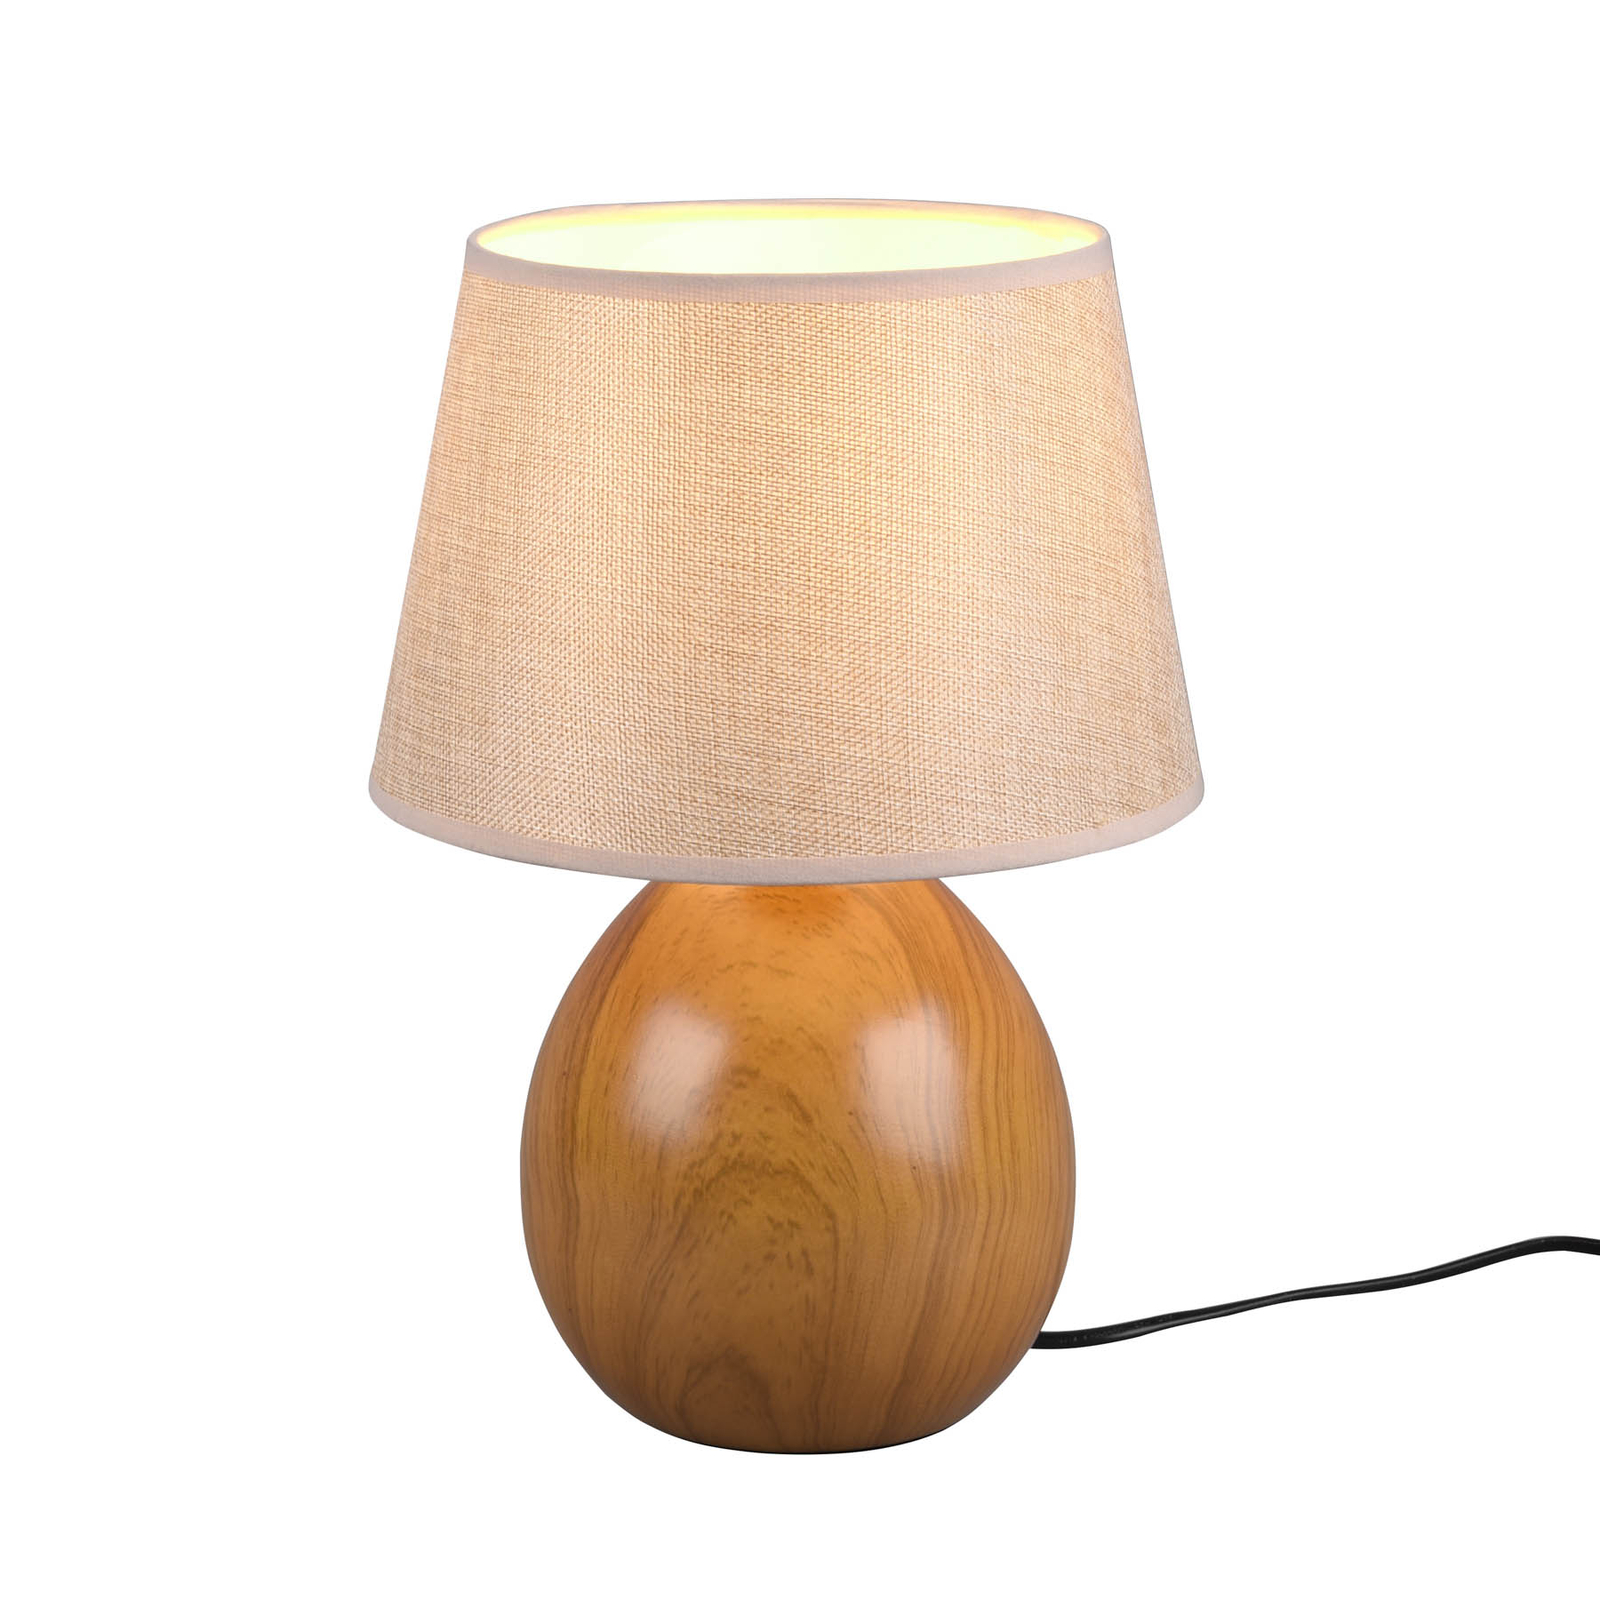 Loxur asztali lámpa, 35cm magas, bézs/fahatású